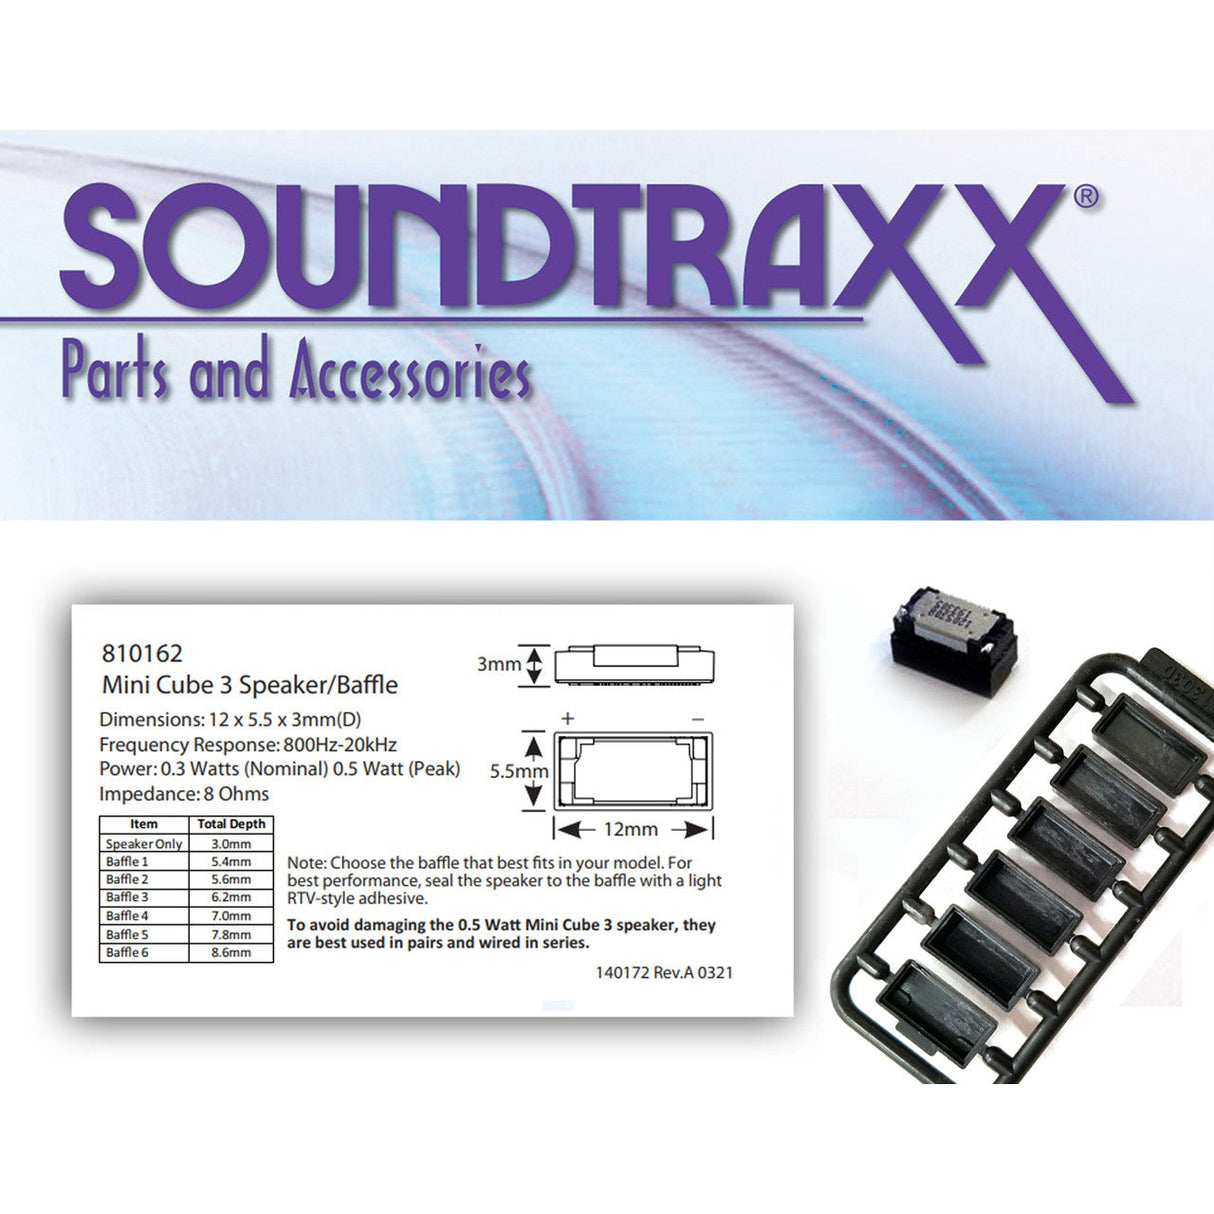 Soundtraxx 12.5 x 5.5 x 3mm Mini Cube 3 & Baffle Kit